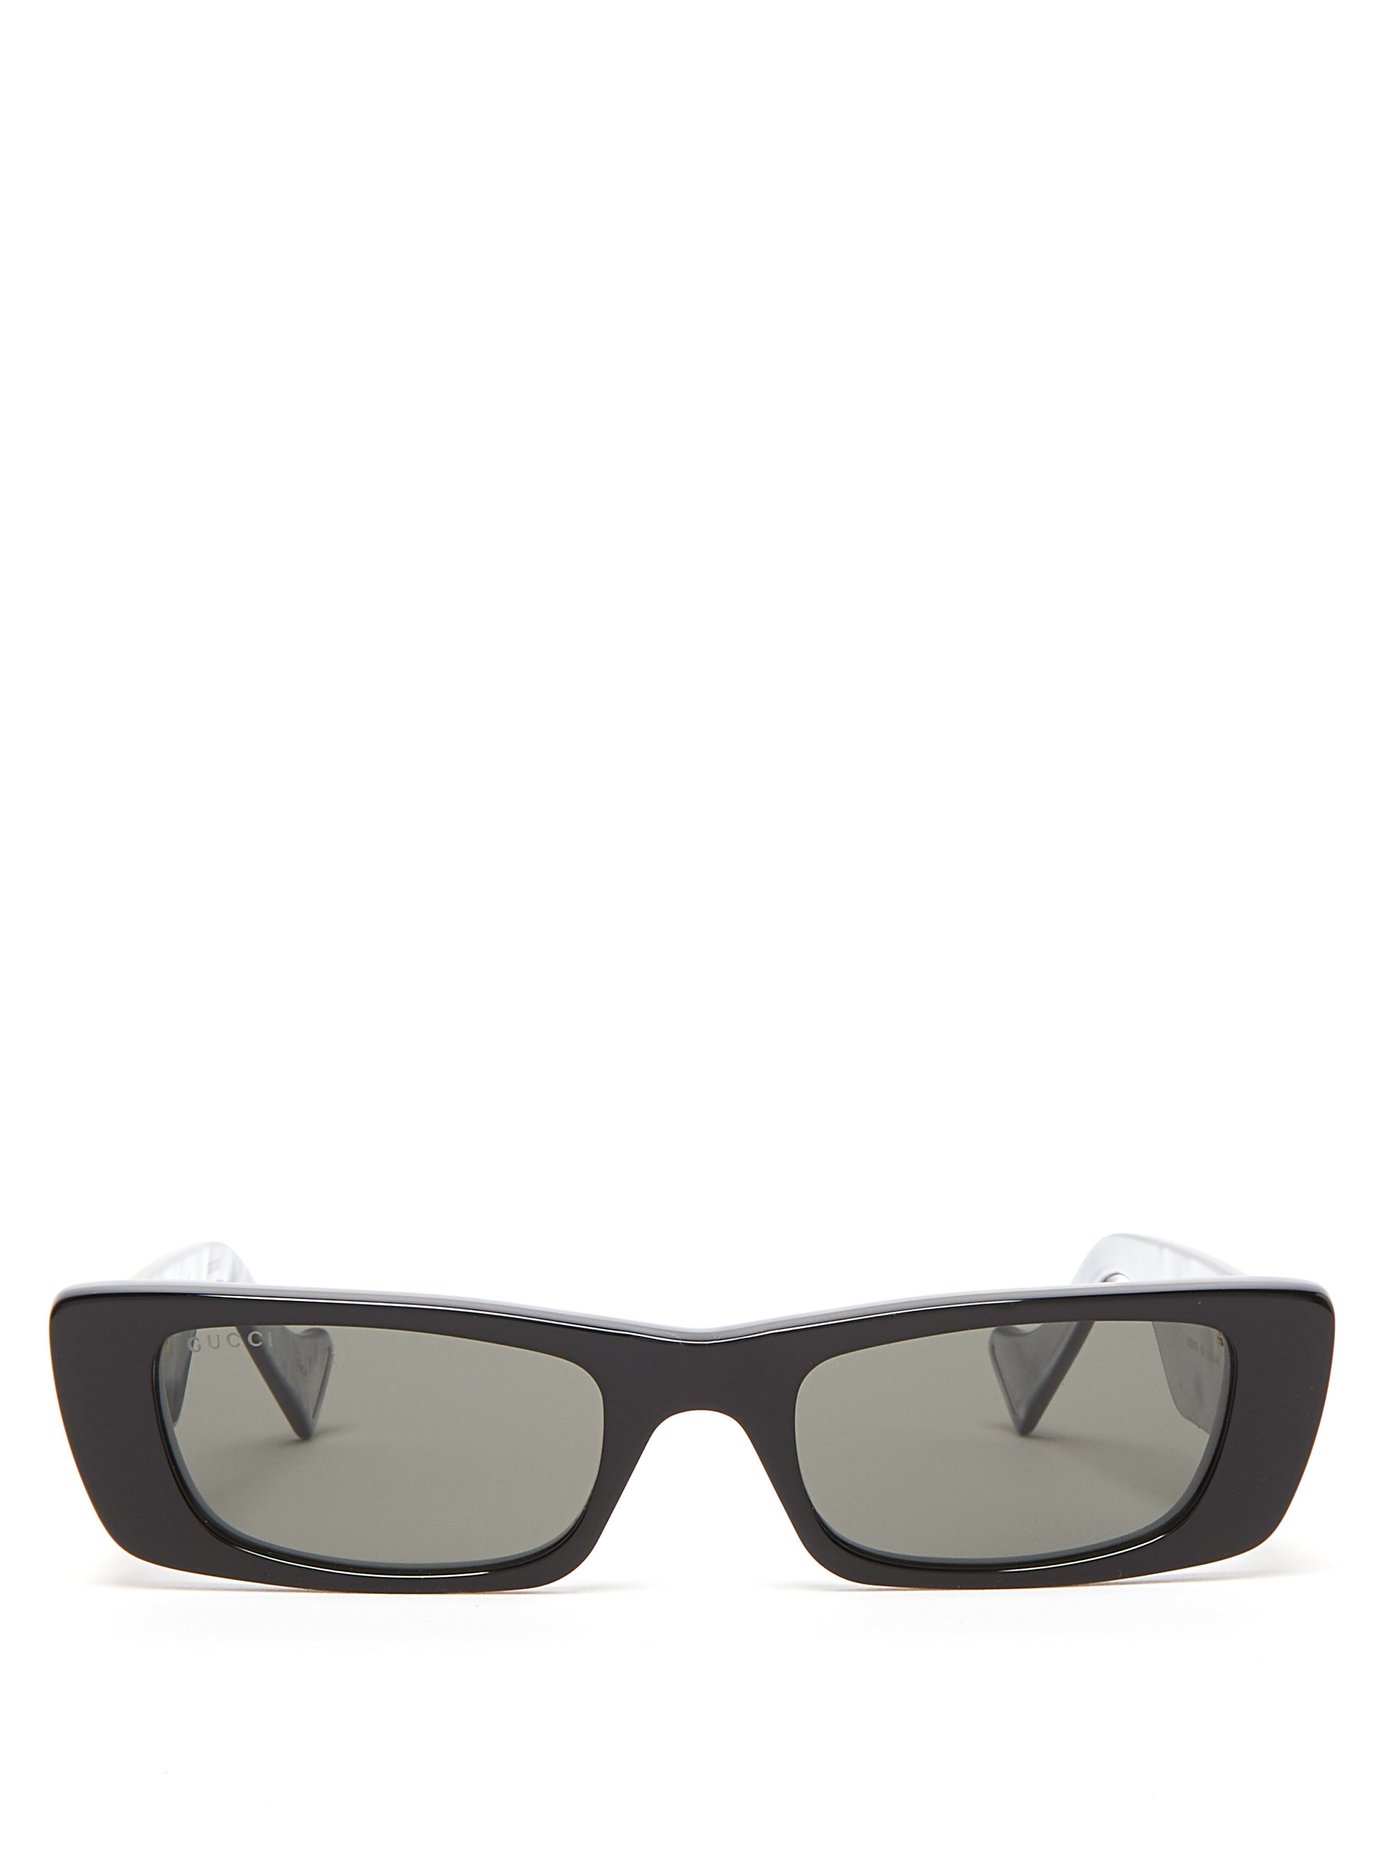 GG rectangular acetate sunglasses 